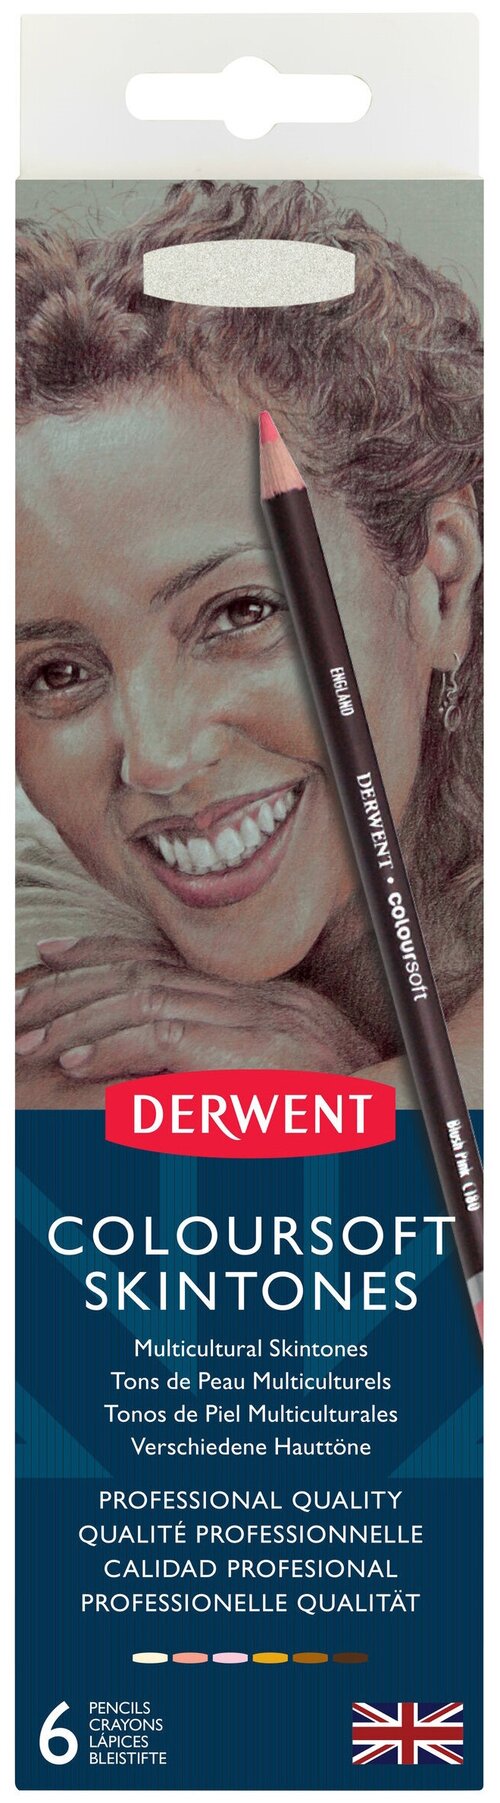 Derwent Цветные карандаши Coloursoft оттенки кожи 6 цветов (2300217) бежевый